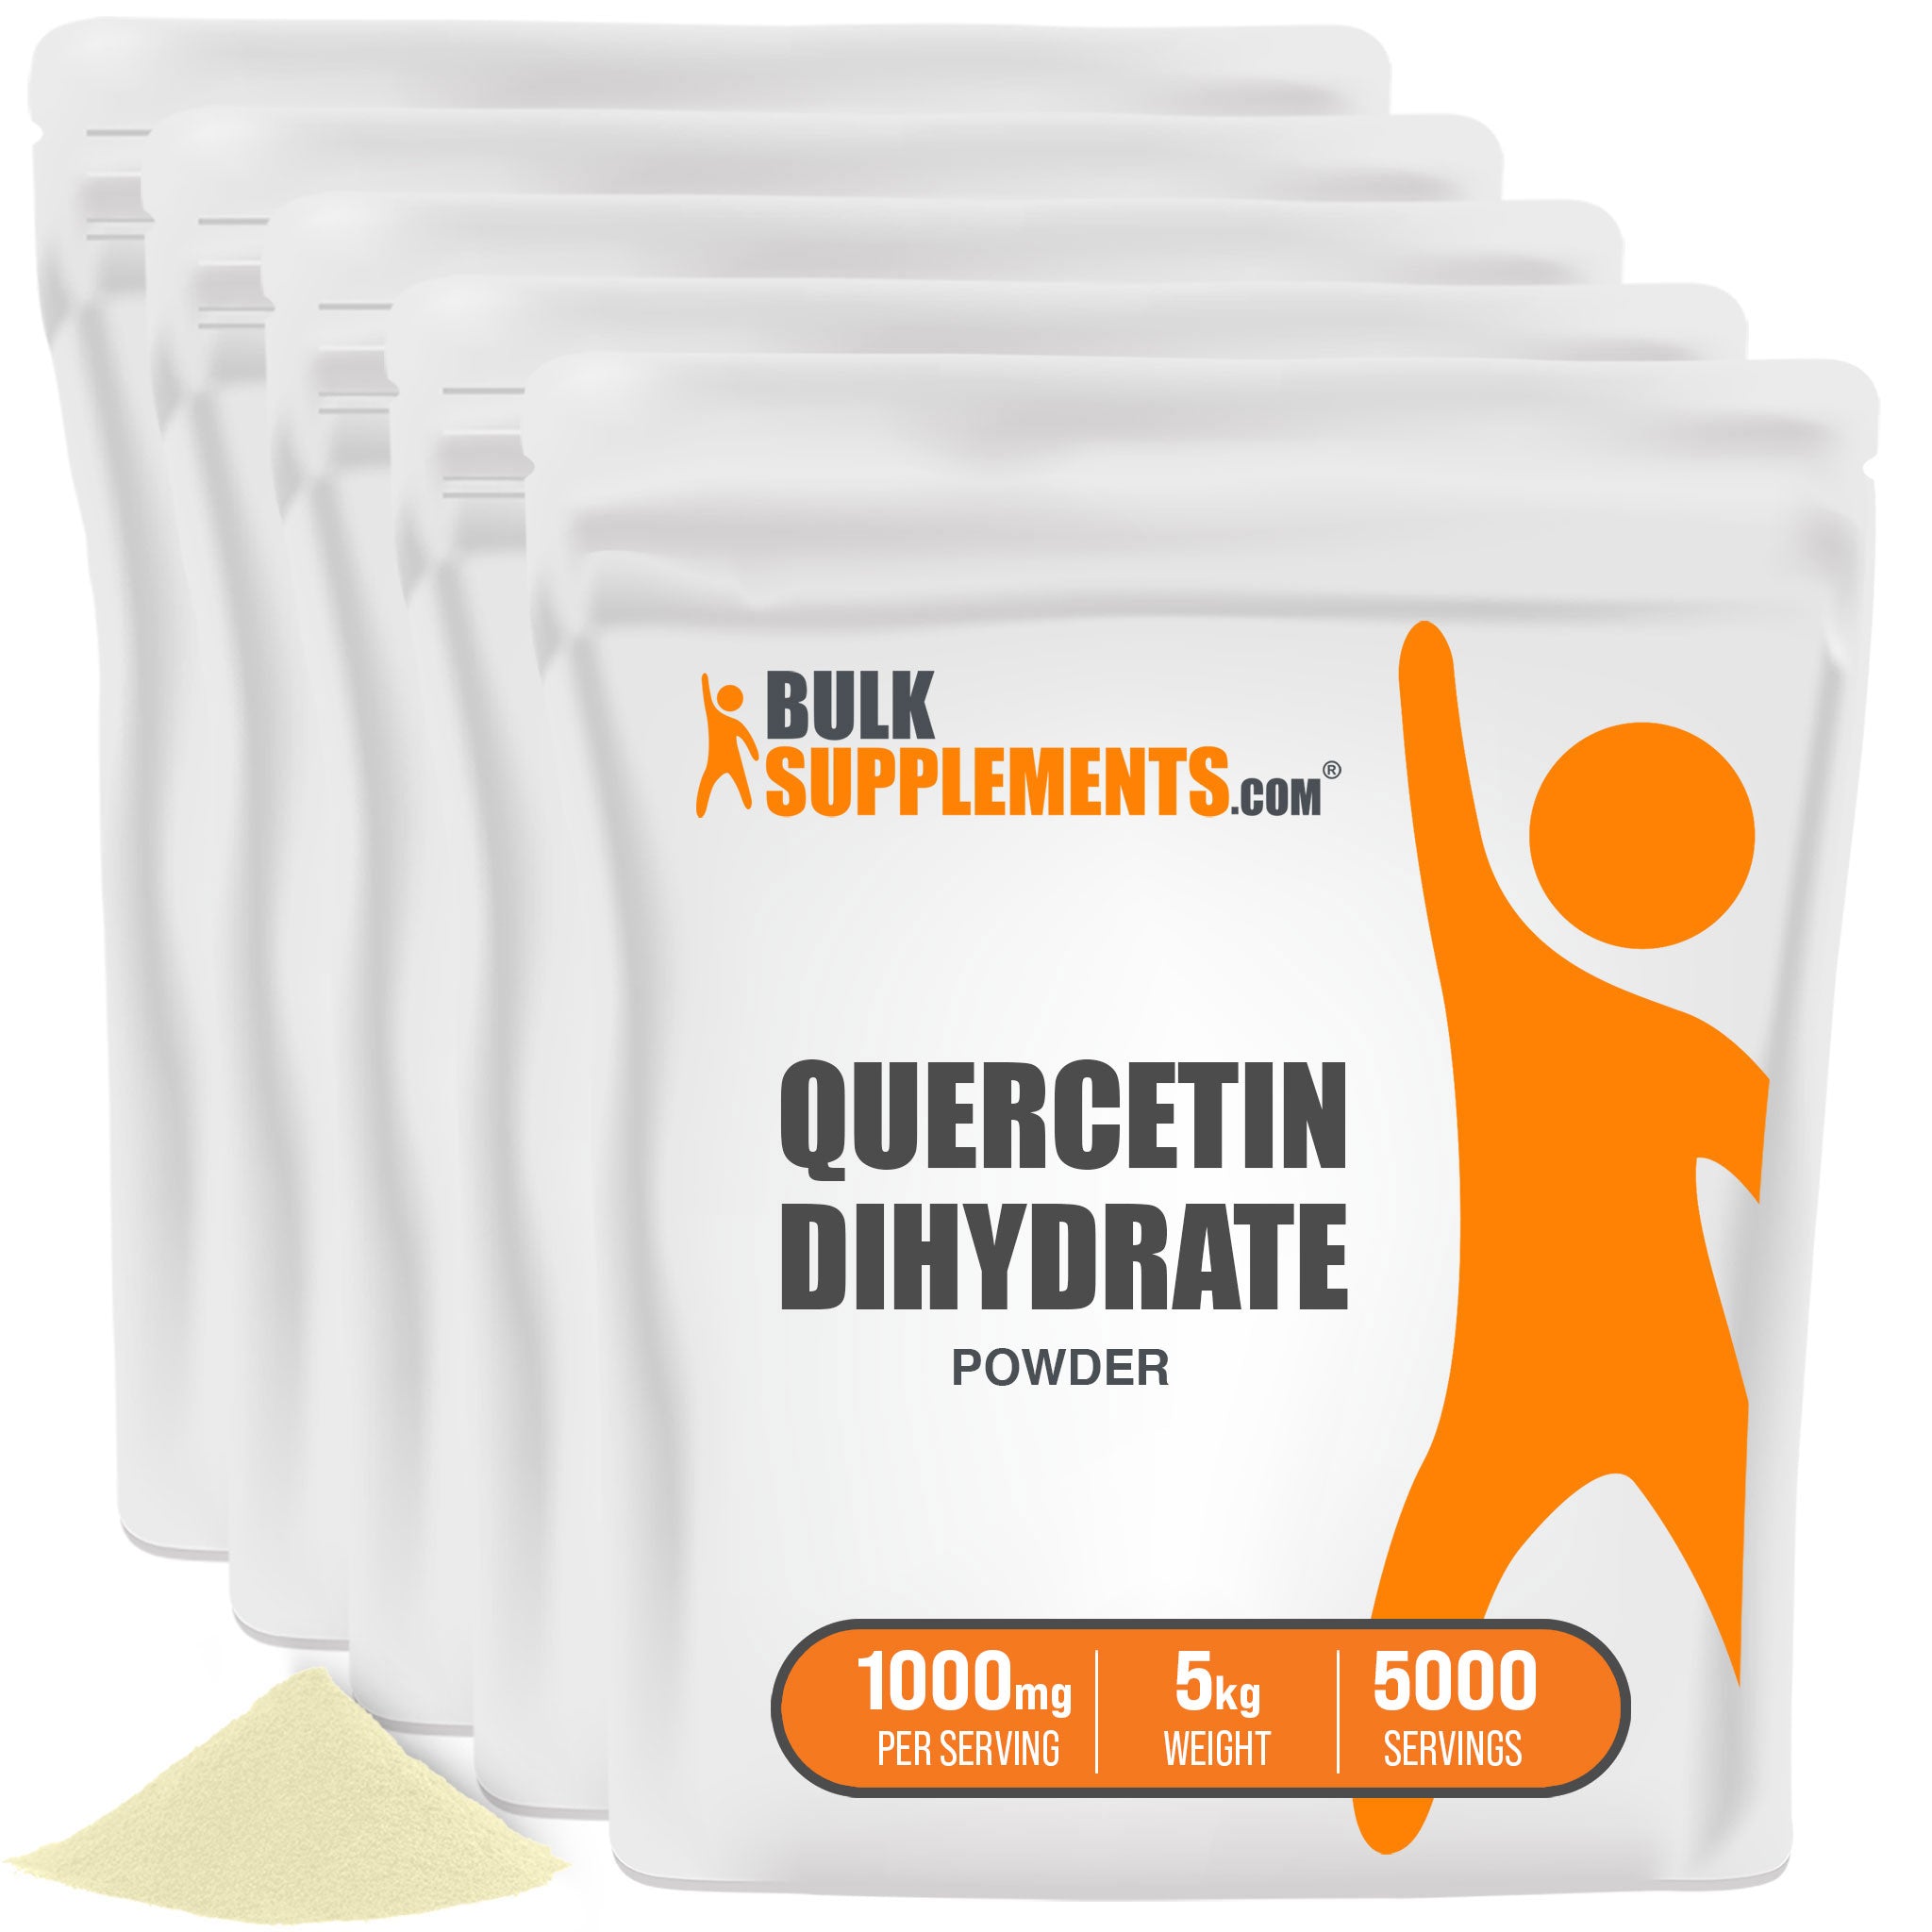 BulkSupplements Quercetin Dihydrate Powder 5kg bags